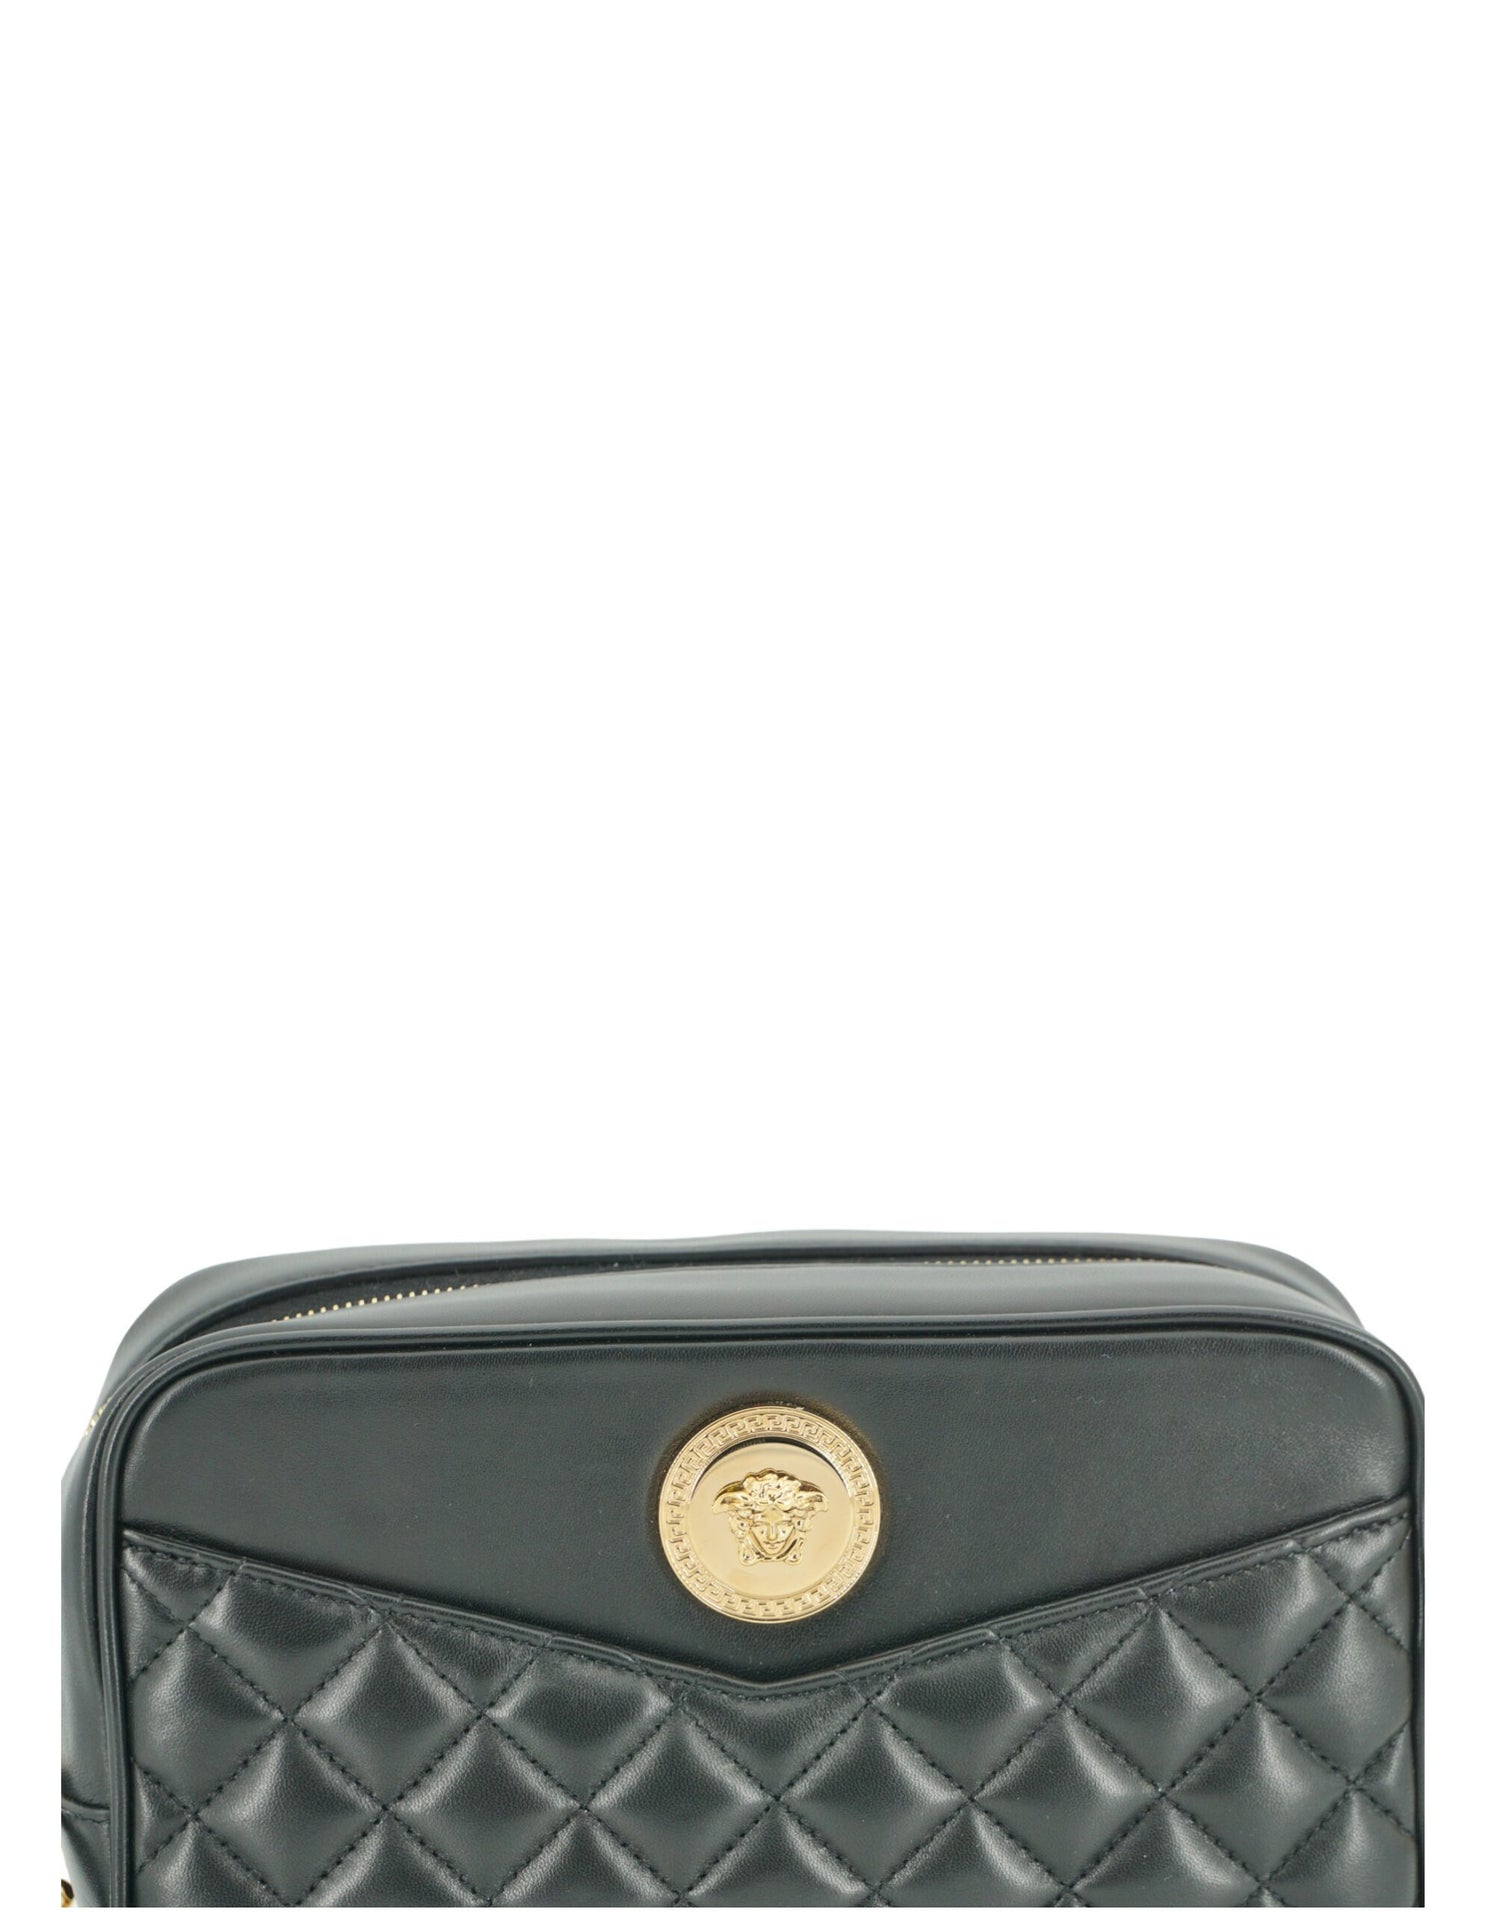 Versace Black Lamb Leather Medium Camera Shoulder Bag - DEA STILOSA MILANO